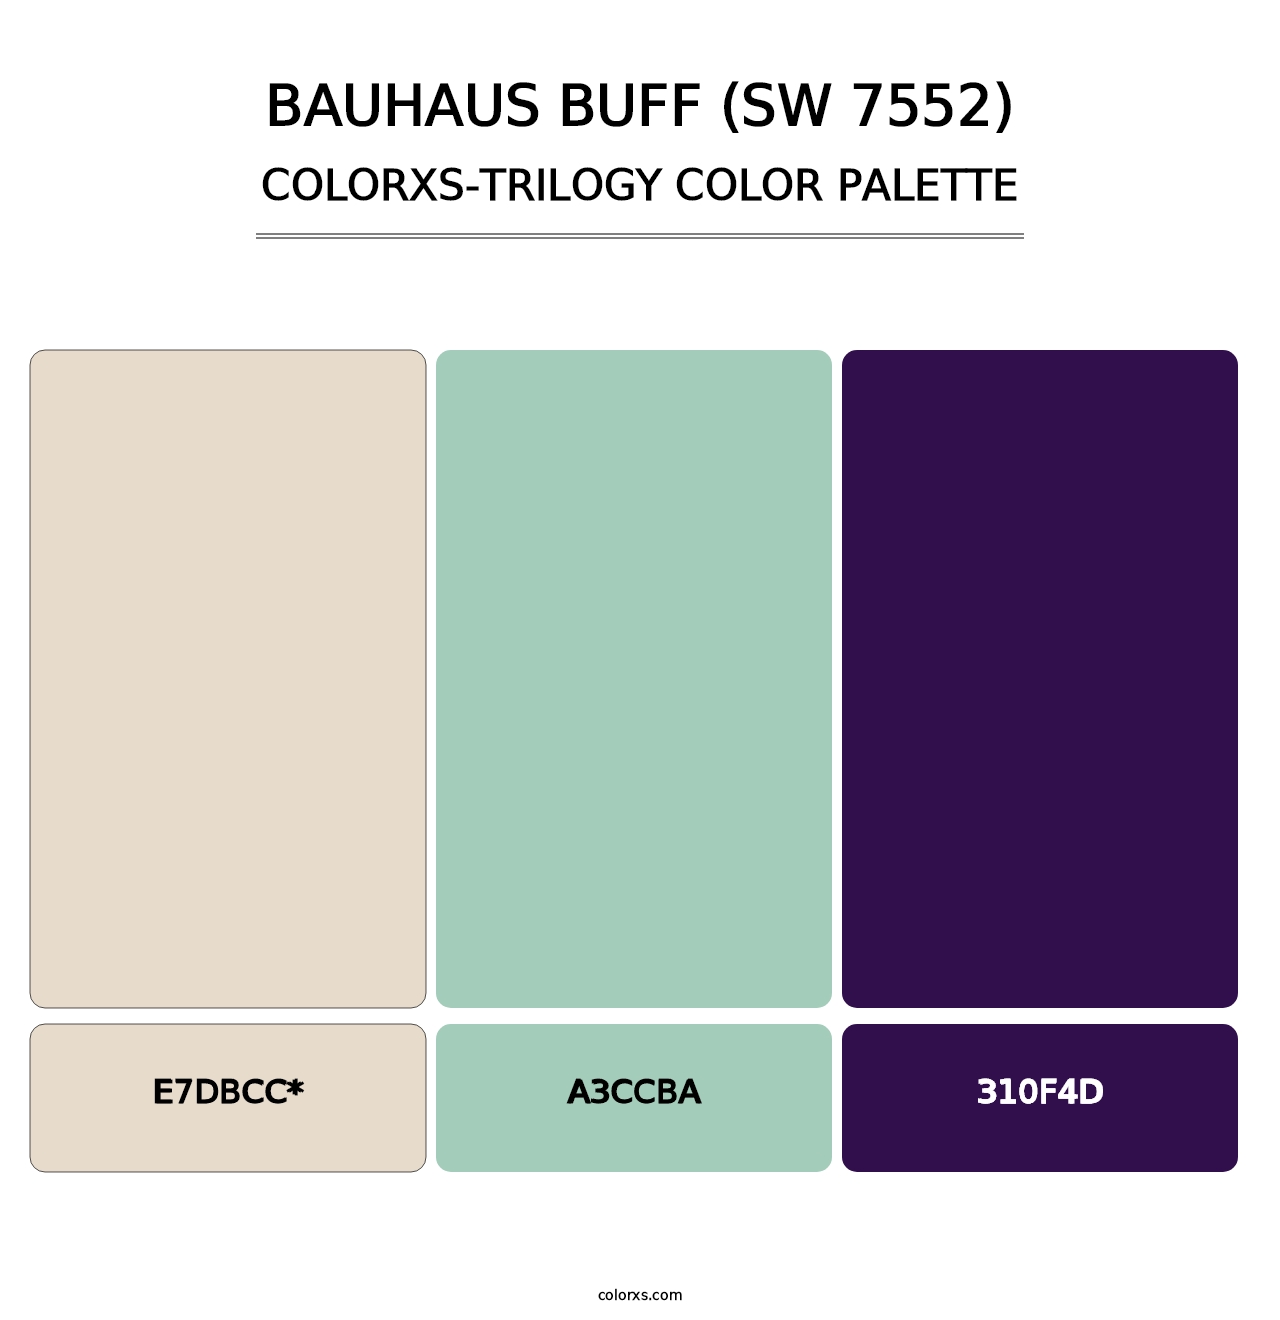 Bauhaus Buff (SW 7552) - Colorxs Trilogy Palette